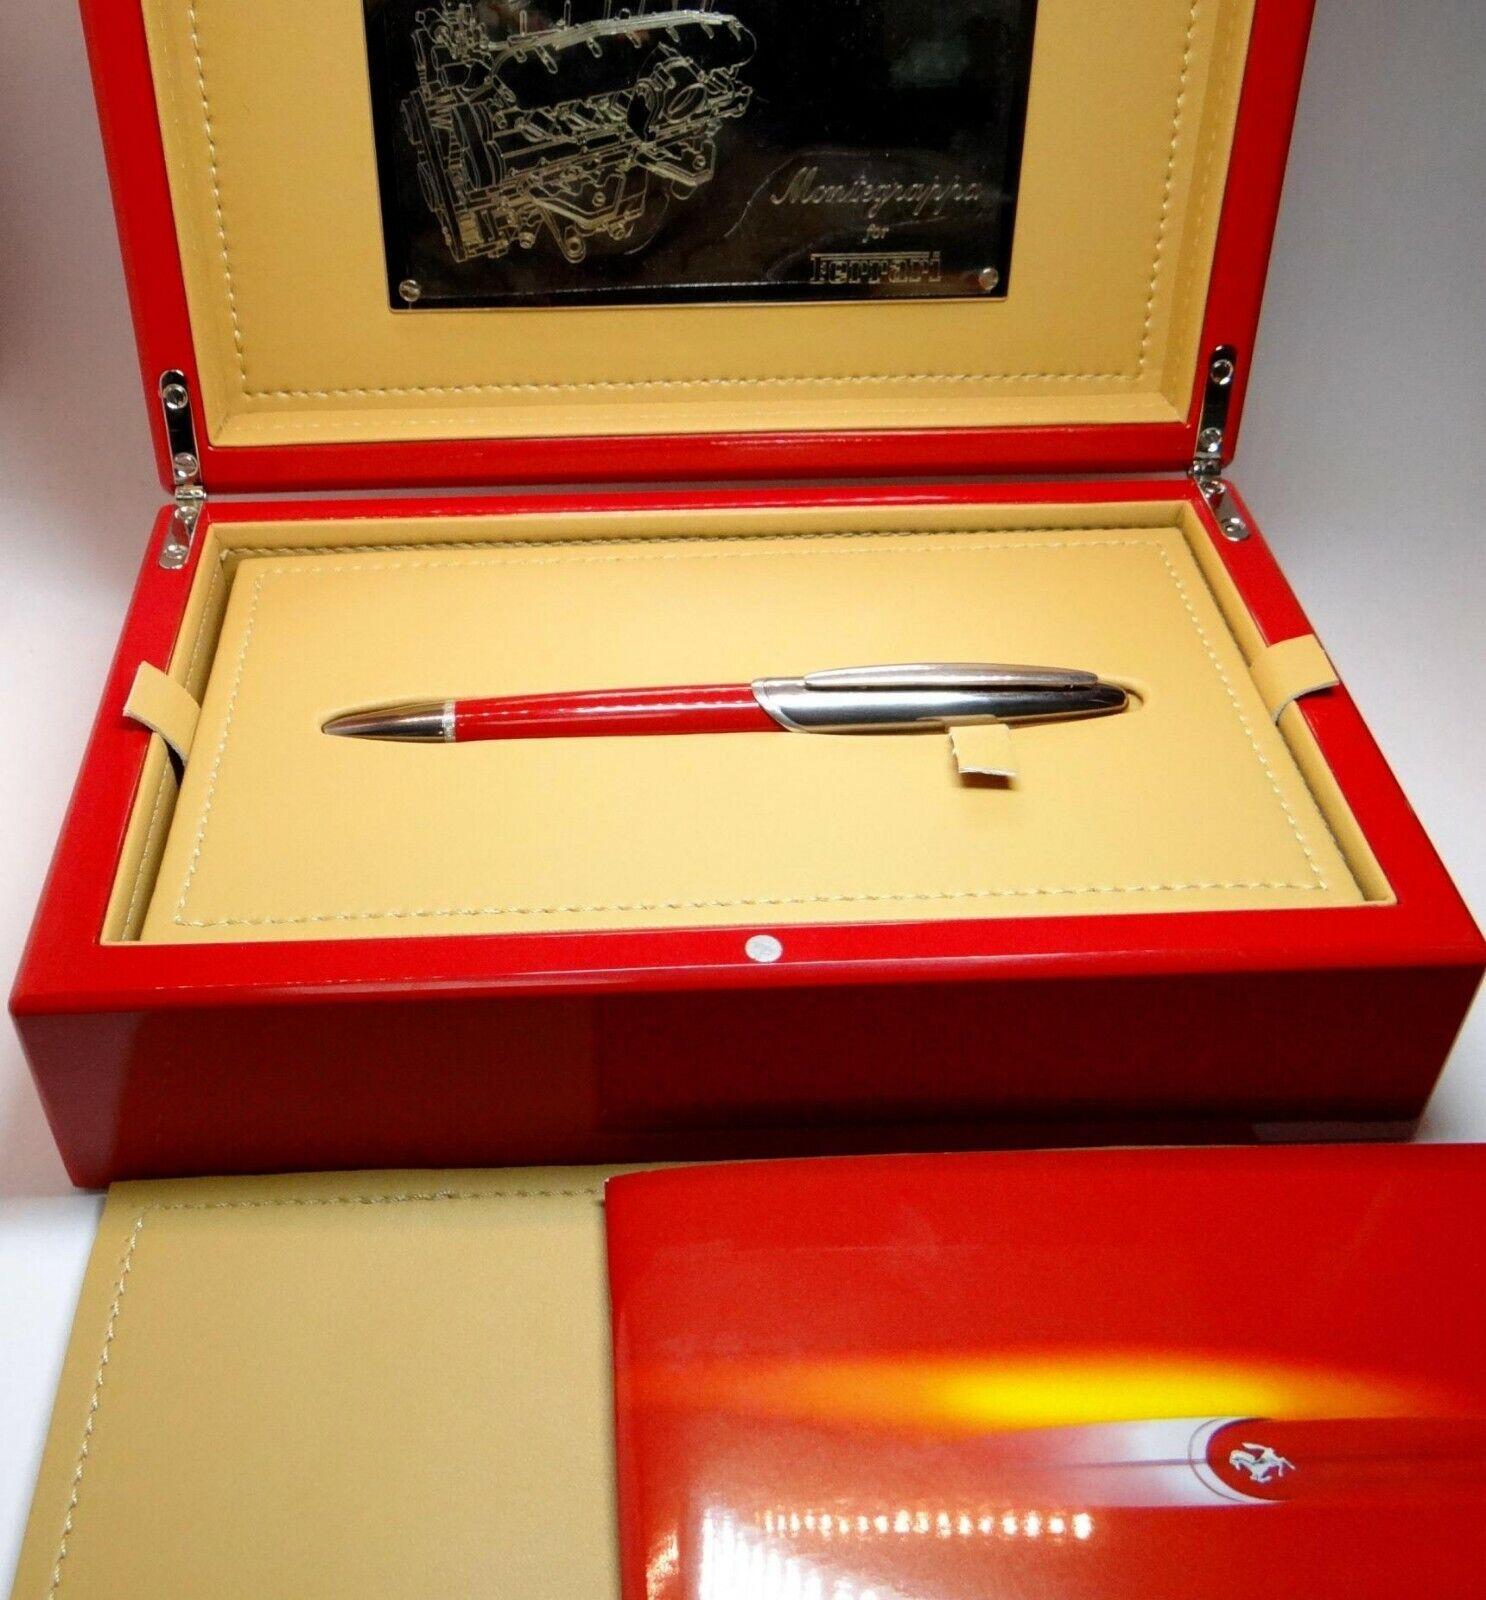 Stylo plume original Montegrappa pour Ferrari avec une clé en or 18K Plume avec la boîte et les papiers d'origine. L'encre est noire.
Longueur du stylo : 15,5 cm ou 6,1 pouces. 
Il s'agit d'un article d'occasion, en excellent état.